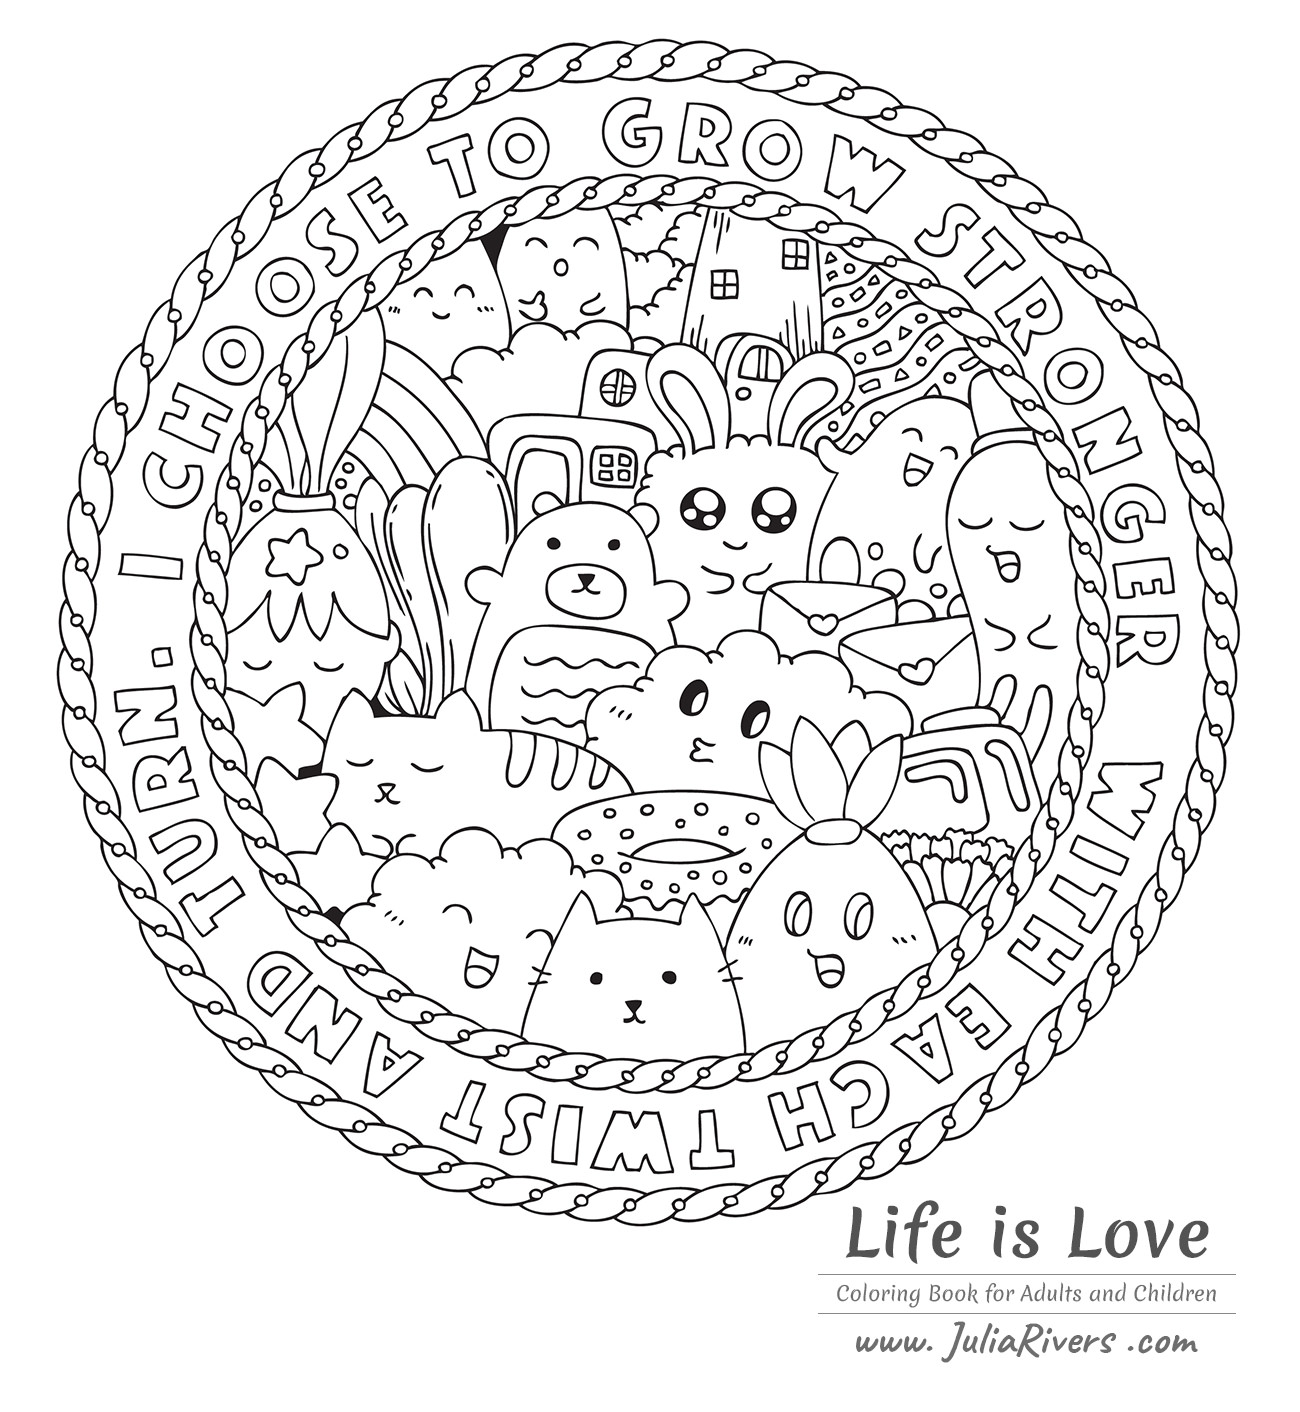 Desenho de página para colorir de doodle kawaii bonito animal de